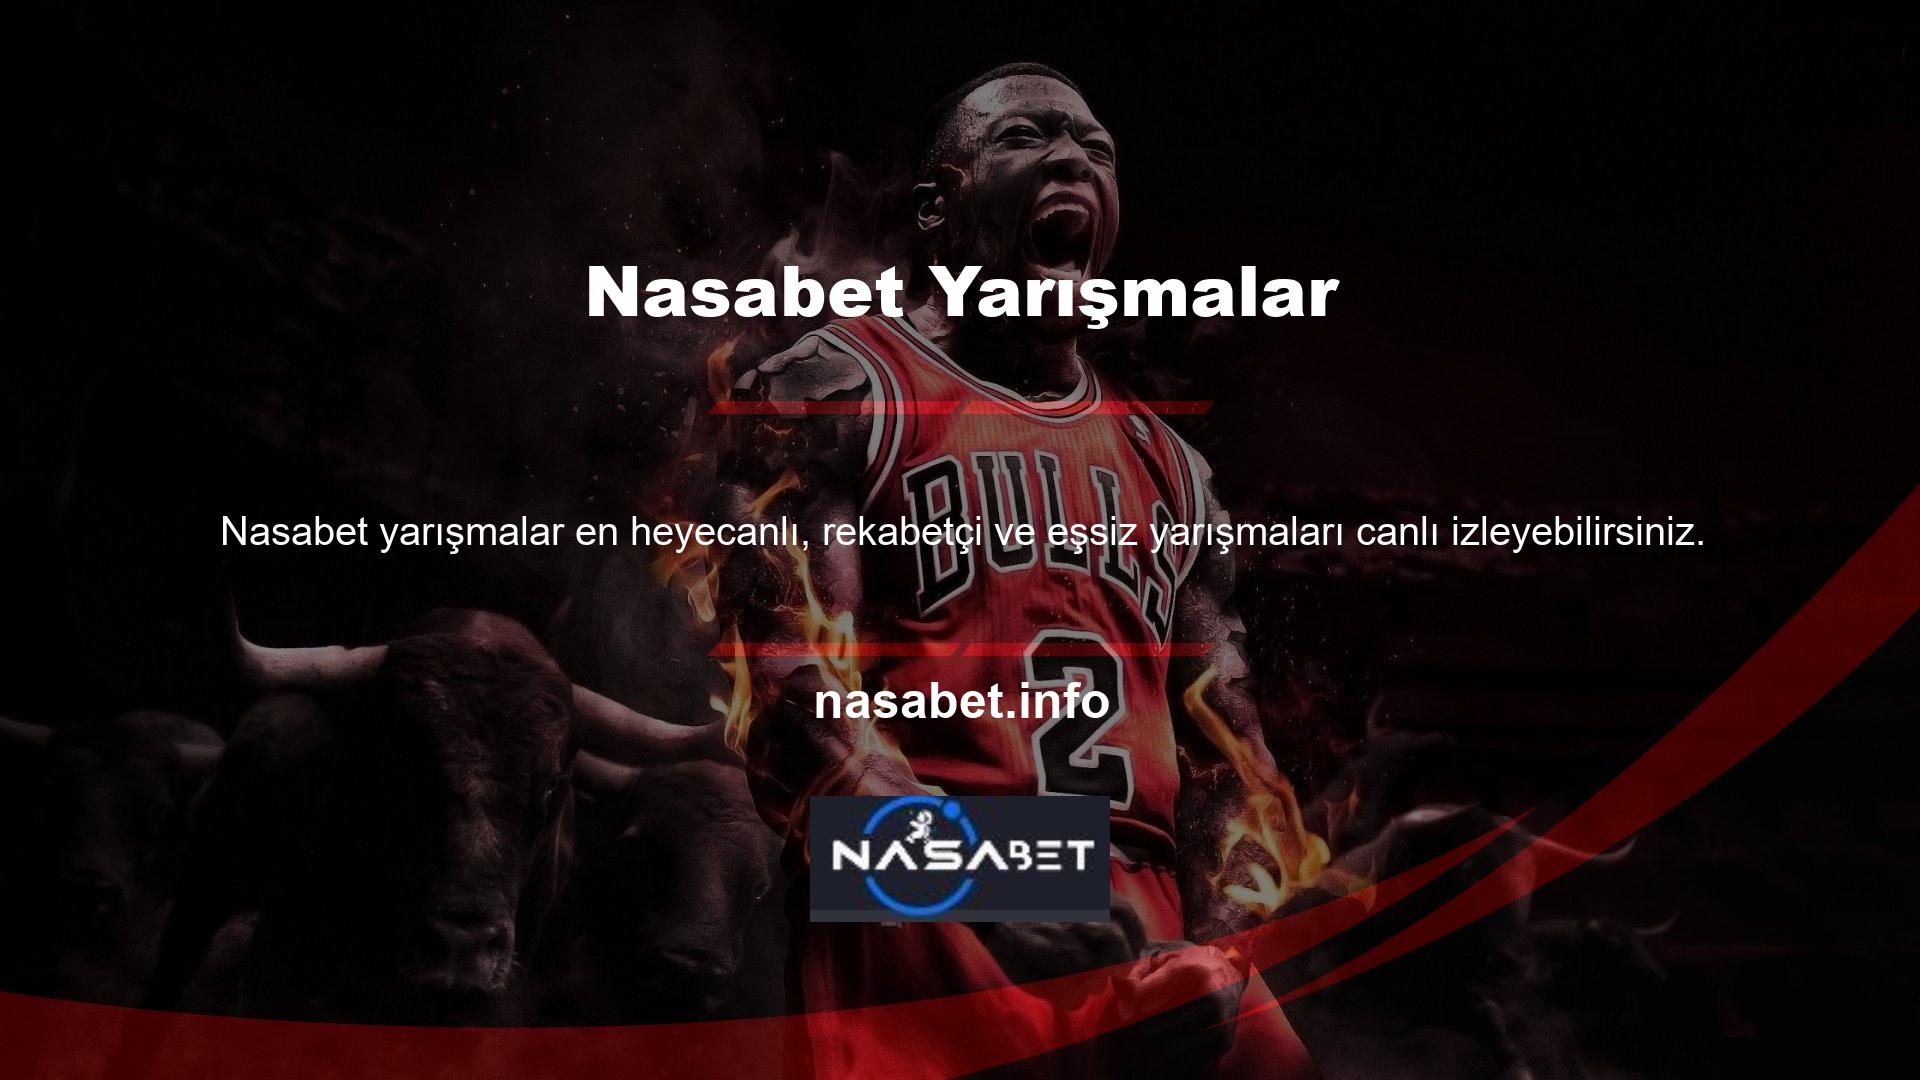 Canlı TV yarış sitelerinde yeniyseniz, başlamak için bugün Nasabet katılın